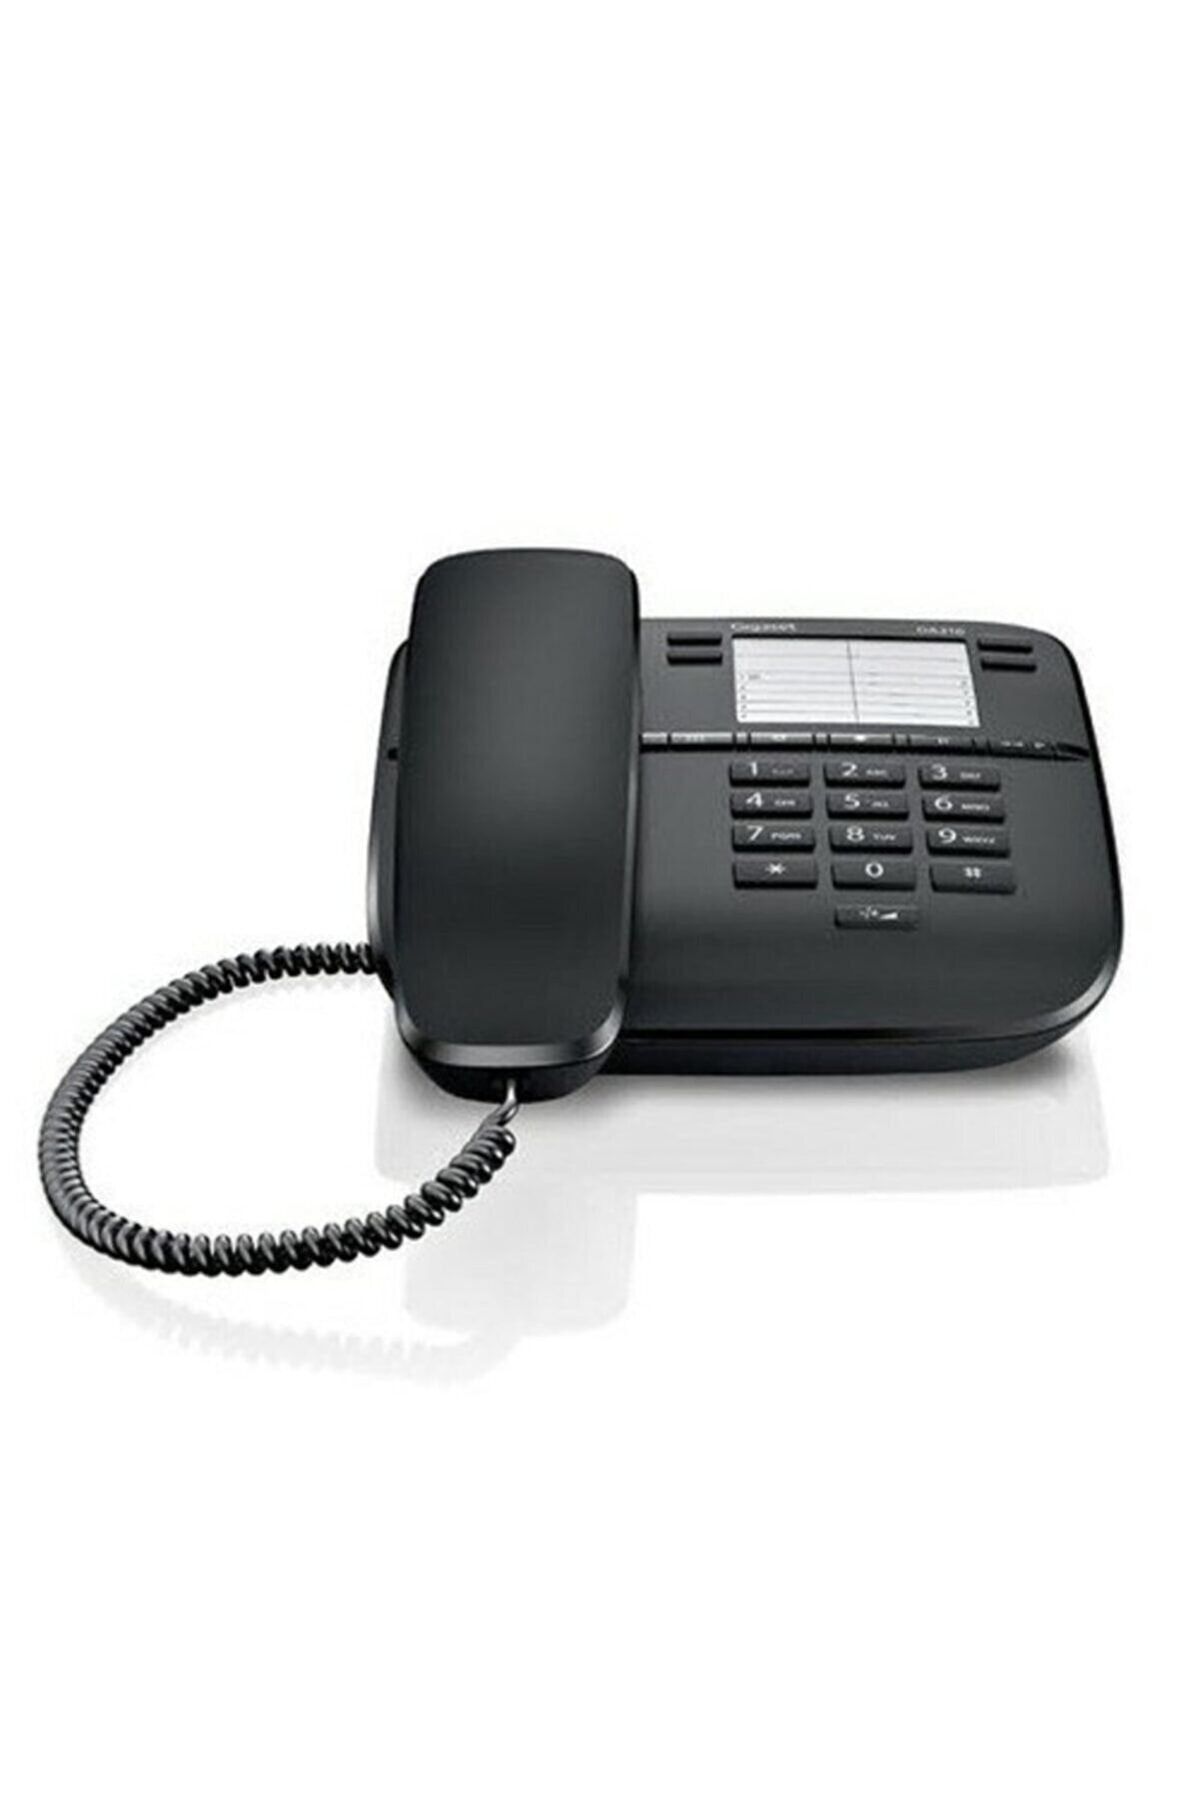 Gigaset Telsiz Telefon - Masaüstü Telefon - Sabit Ev Telefonu